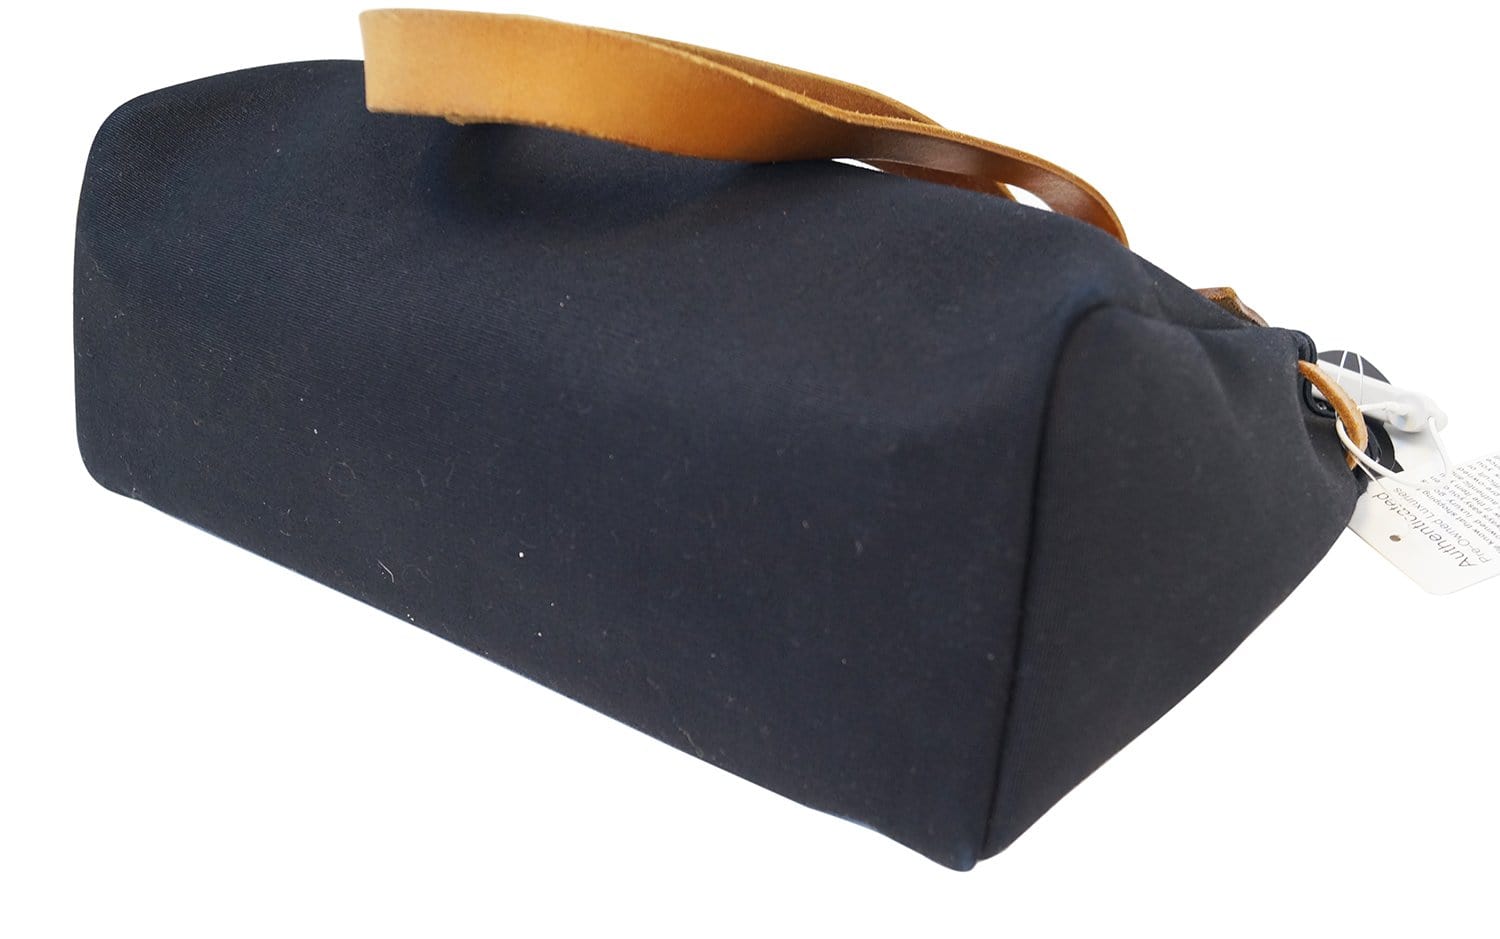 Hermes Herbag Shoulder Bag Calfskin Leather Cabas PM 2 in 1